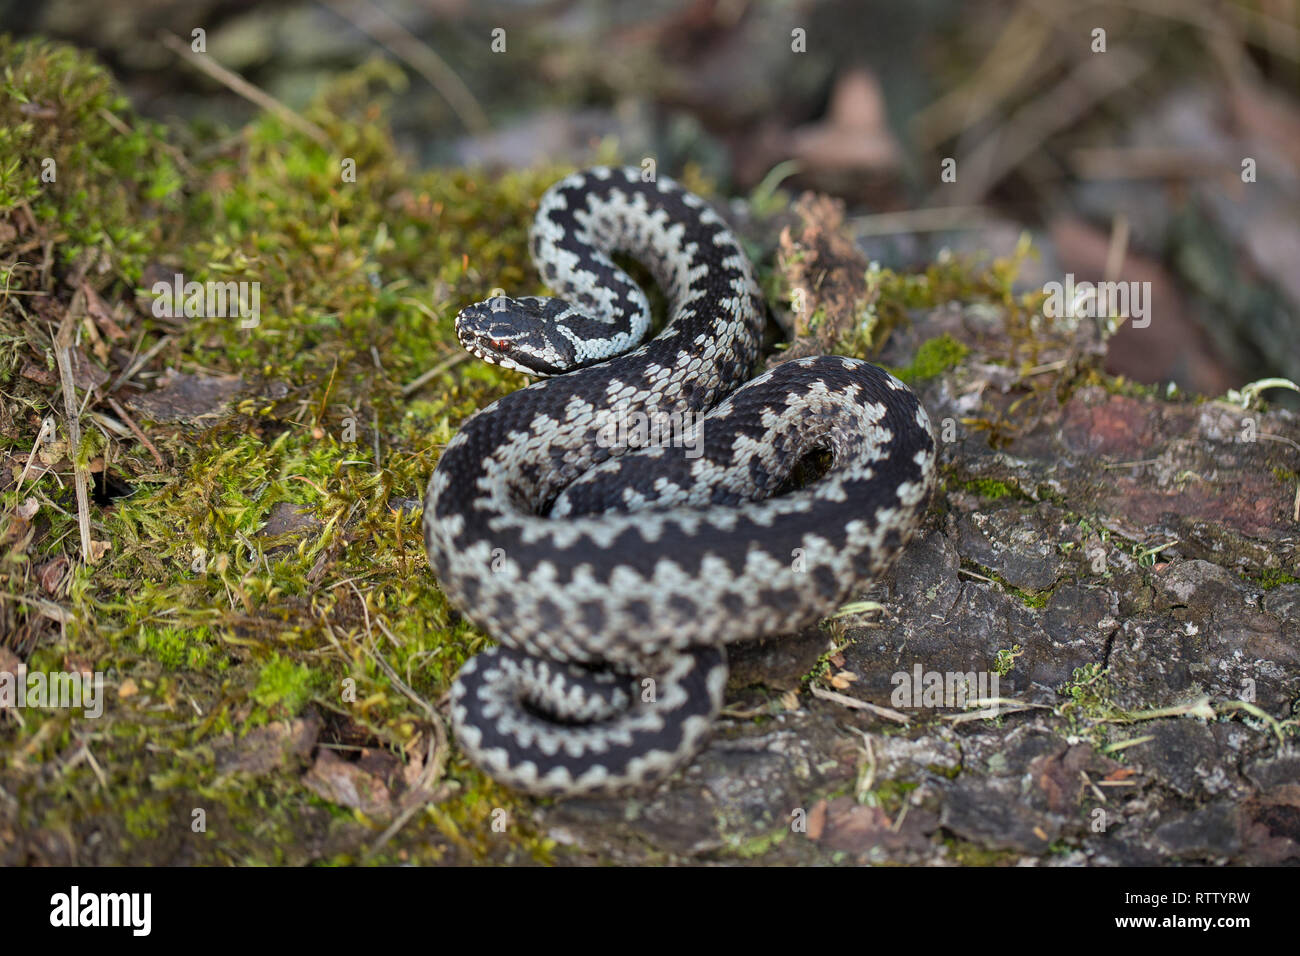 European viper Vipera berus in Czech Republic Stock Photo